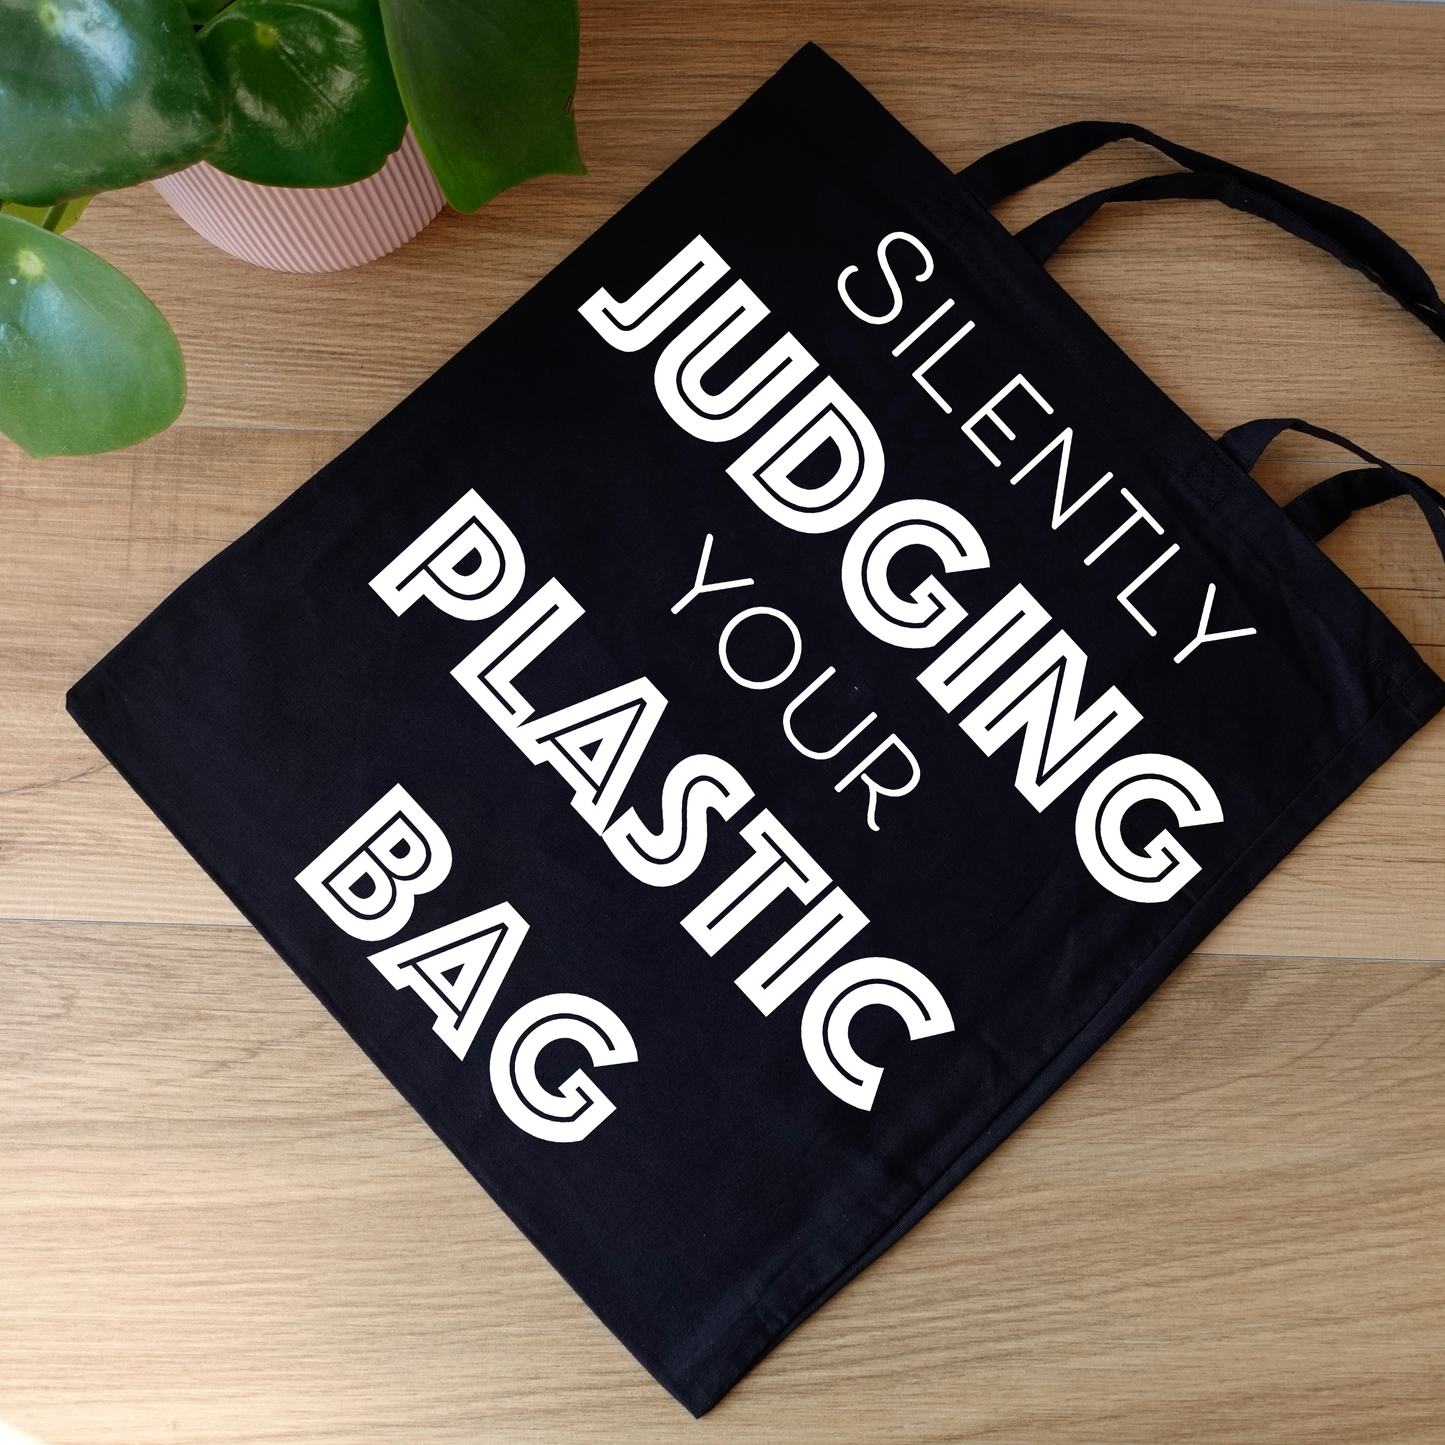 Tote bag - Judging plastic